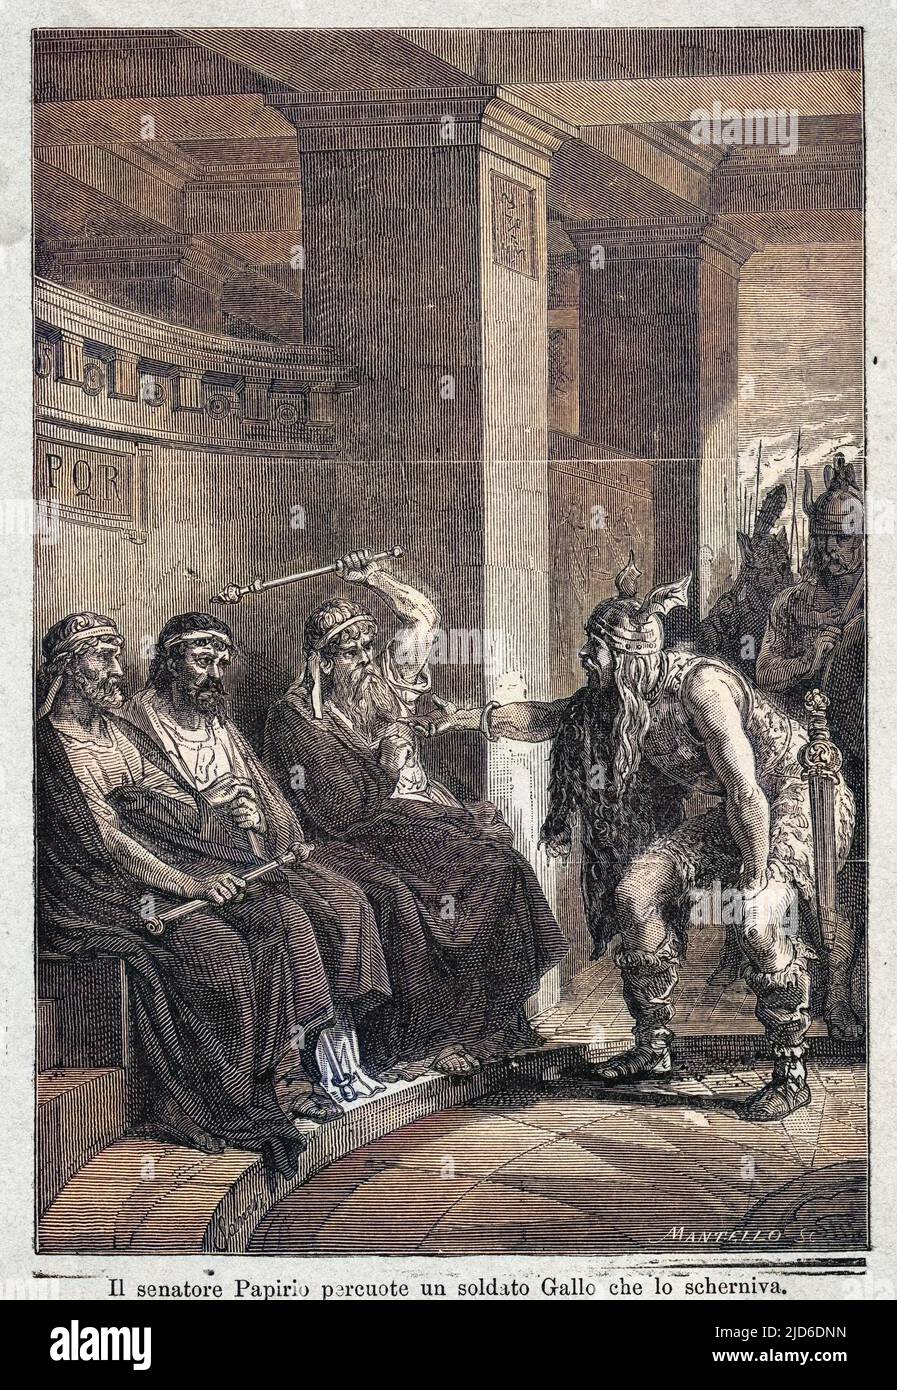 Der römische Senator Papirio wird von einem eindringenden Gallier verspottet und schlägt ihn mit seinem zeremoniellen Stab, für den er getötet wird. Kolorierte Version von : 10191946 Datum: 390 v. Chr. Stockfoto